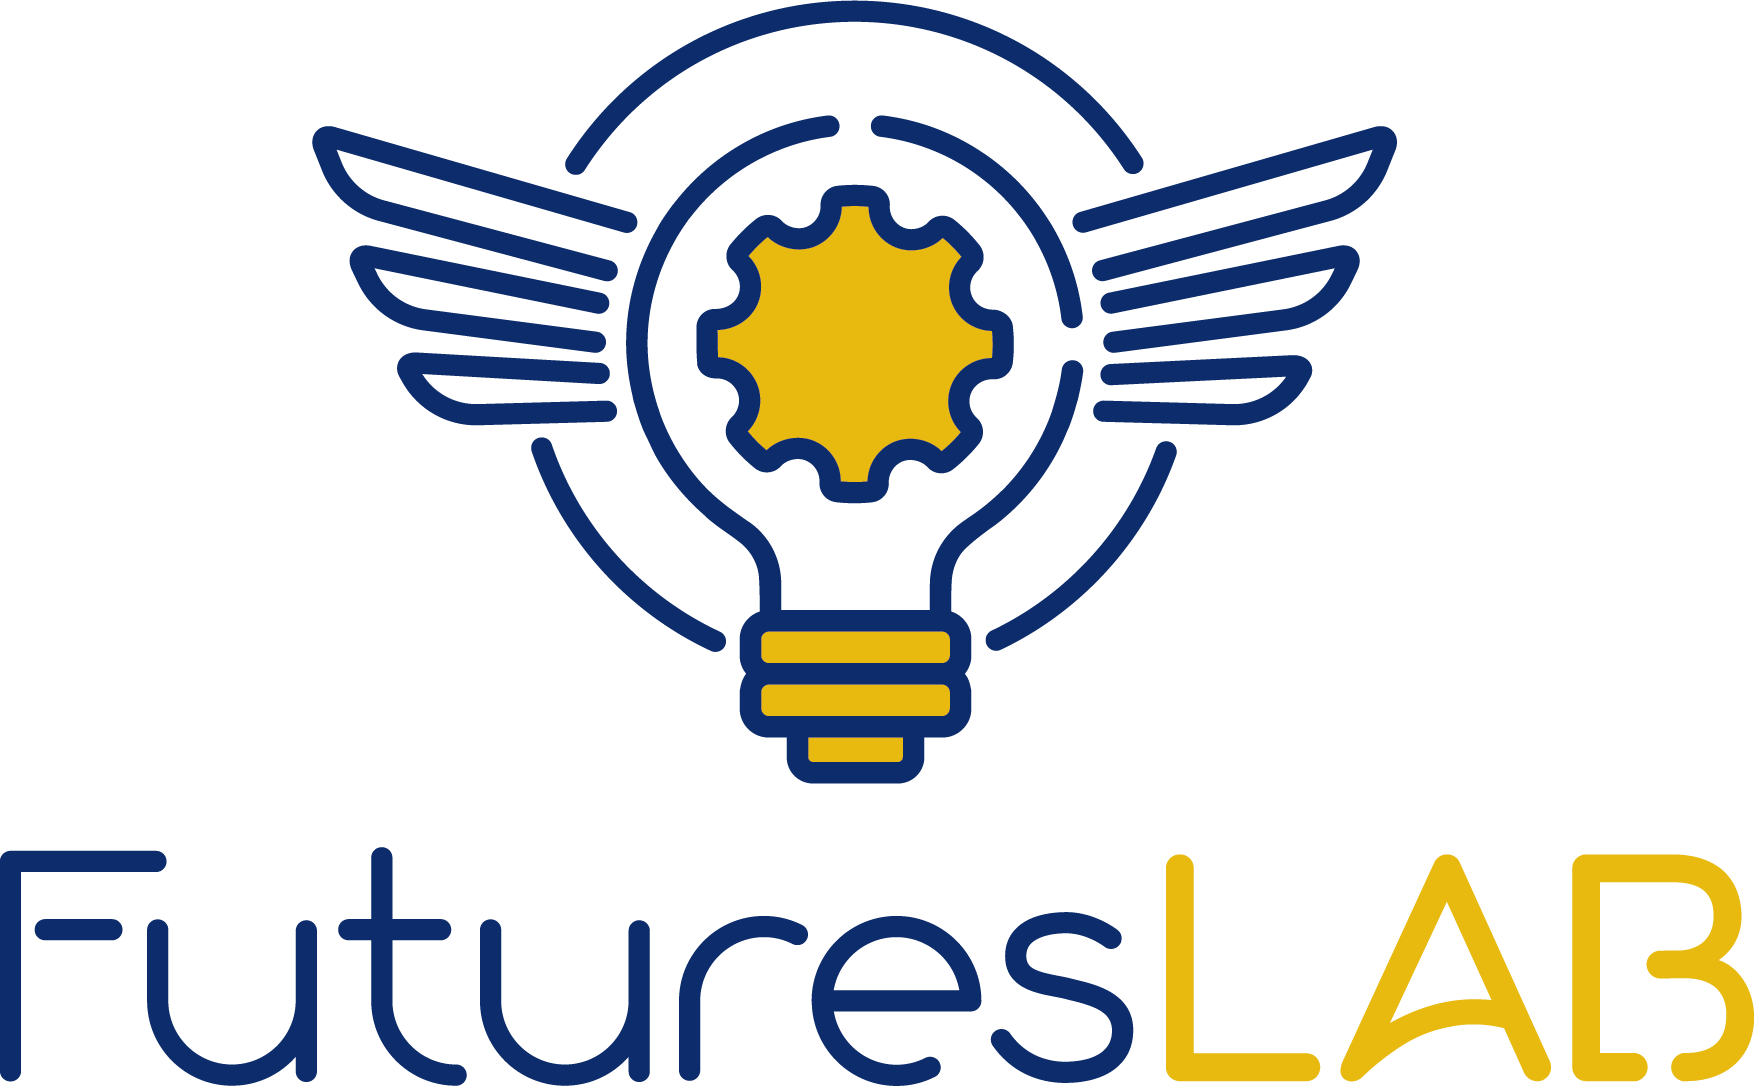 Futures Lab